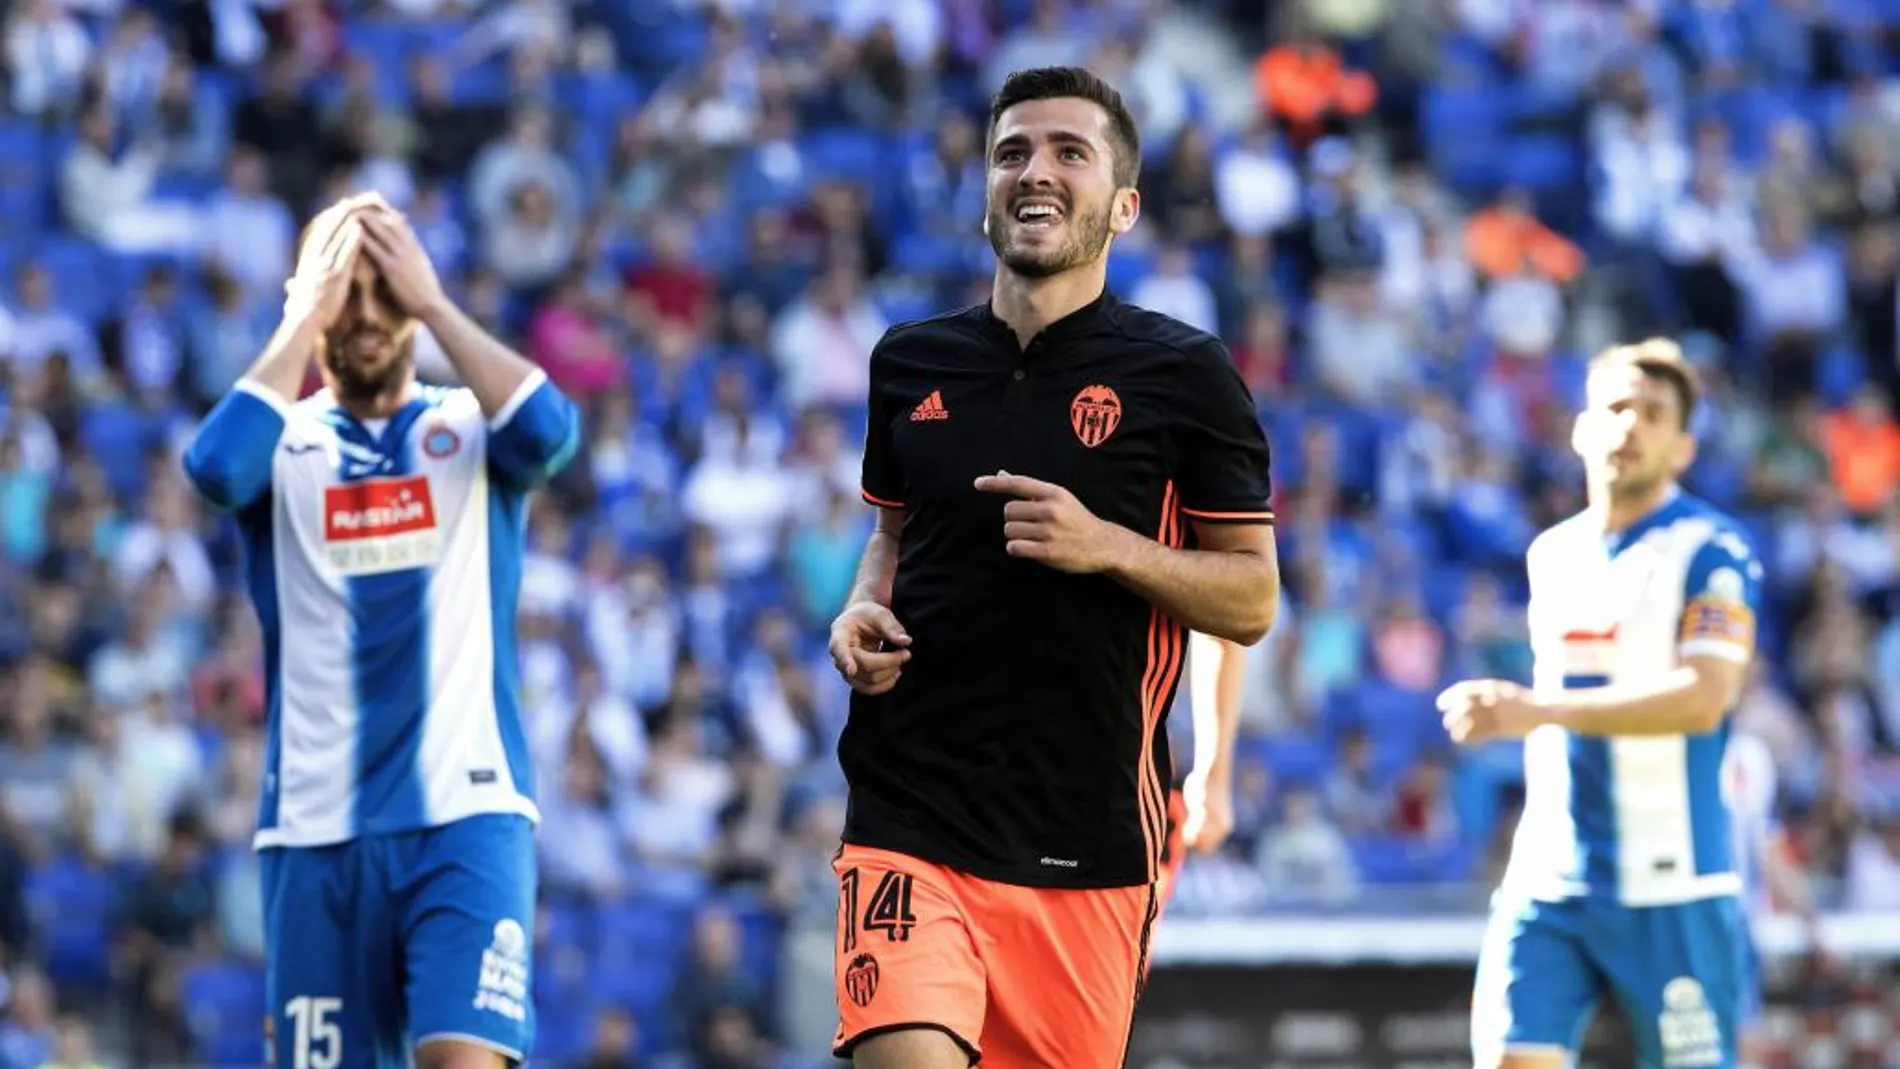 El defensa del Valencia José Luís Gayá (c) celebra su gol marcado ante el Espanyol durante el partido correspondiente a la trigésimo séptima jornada de LaLiga Santander disputado hoy en el estadio RCDE Stadium.